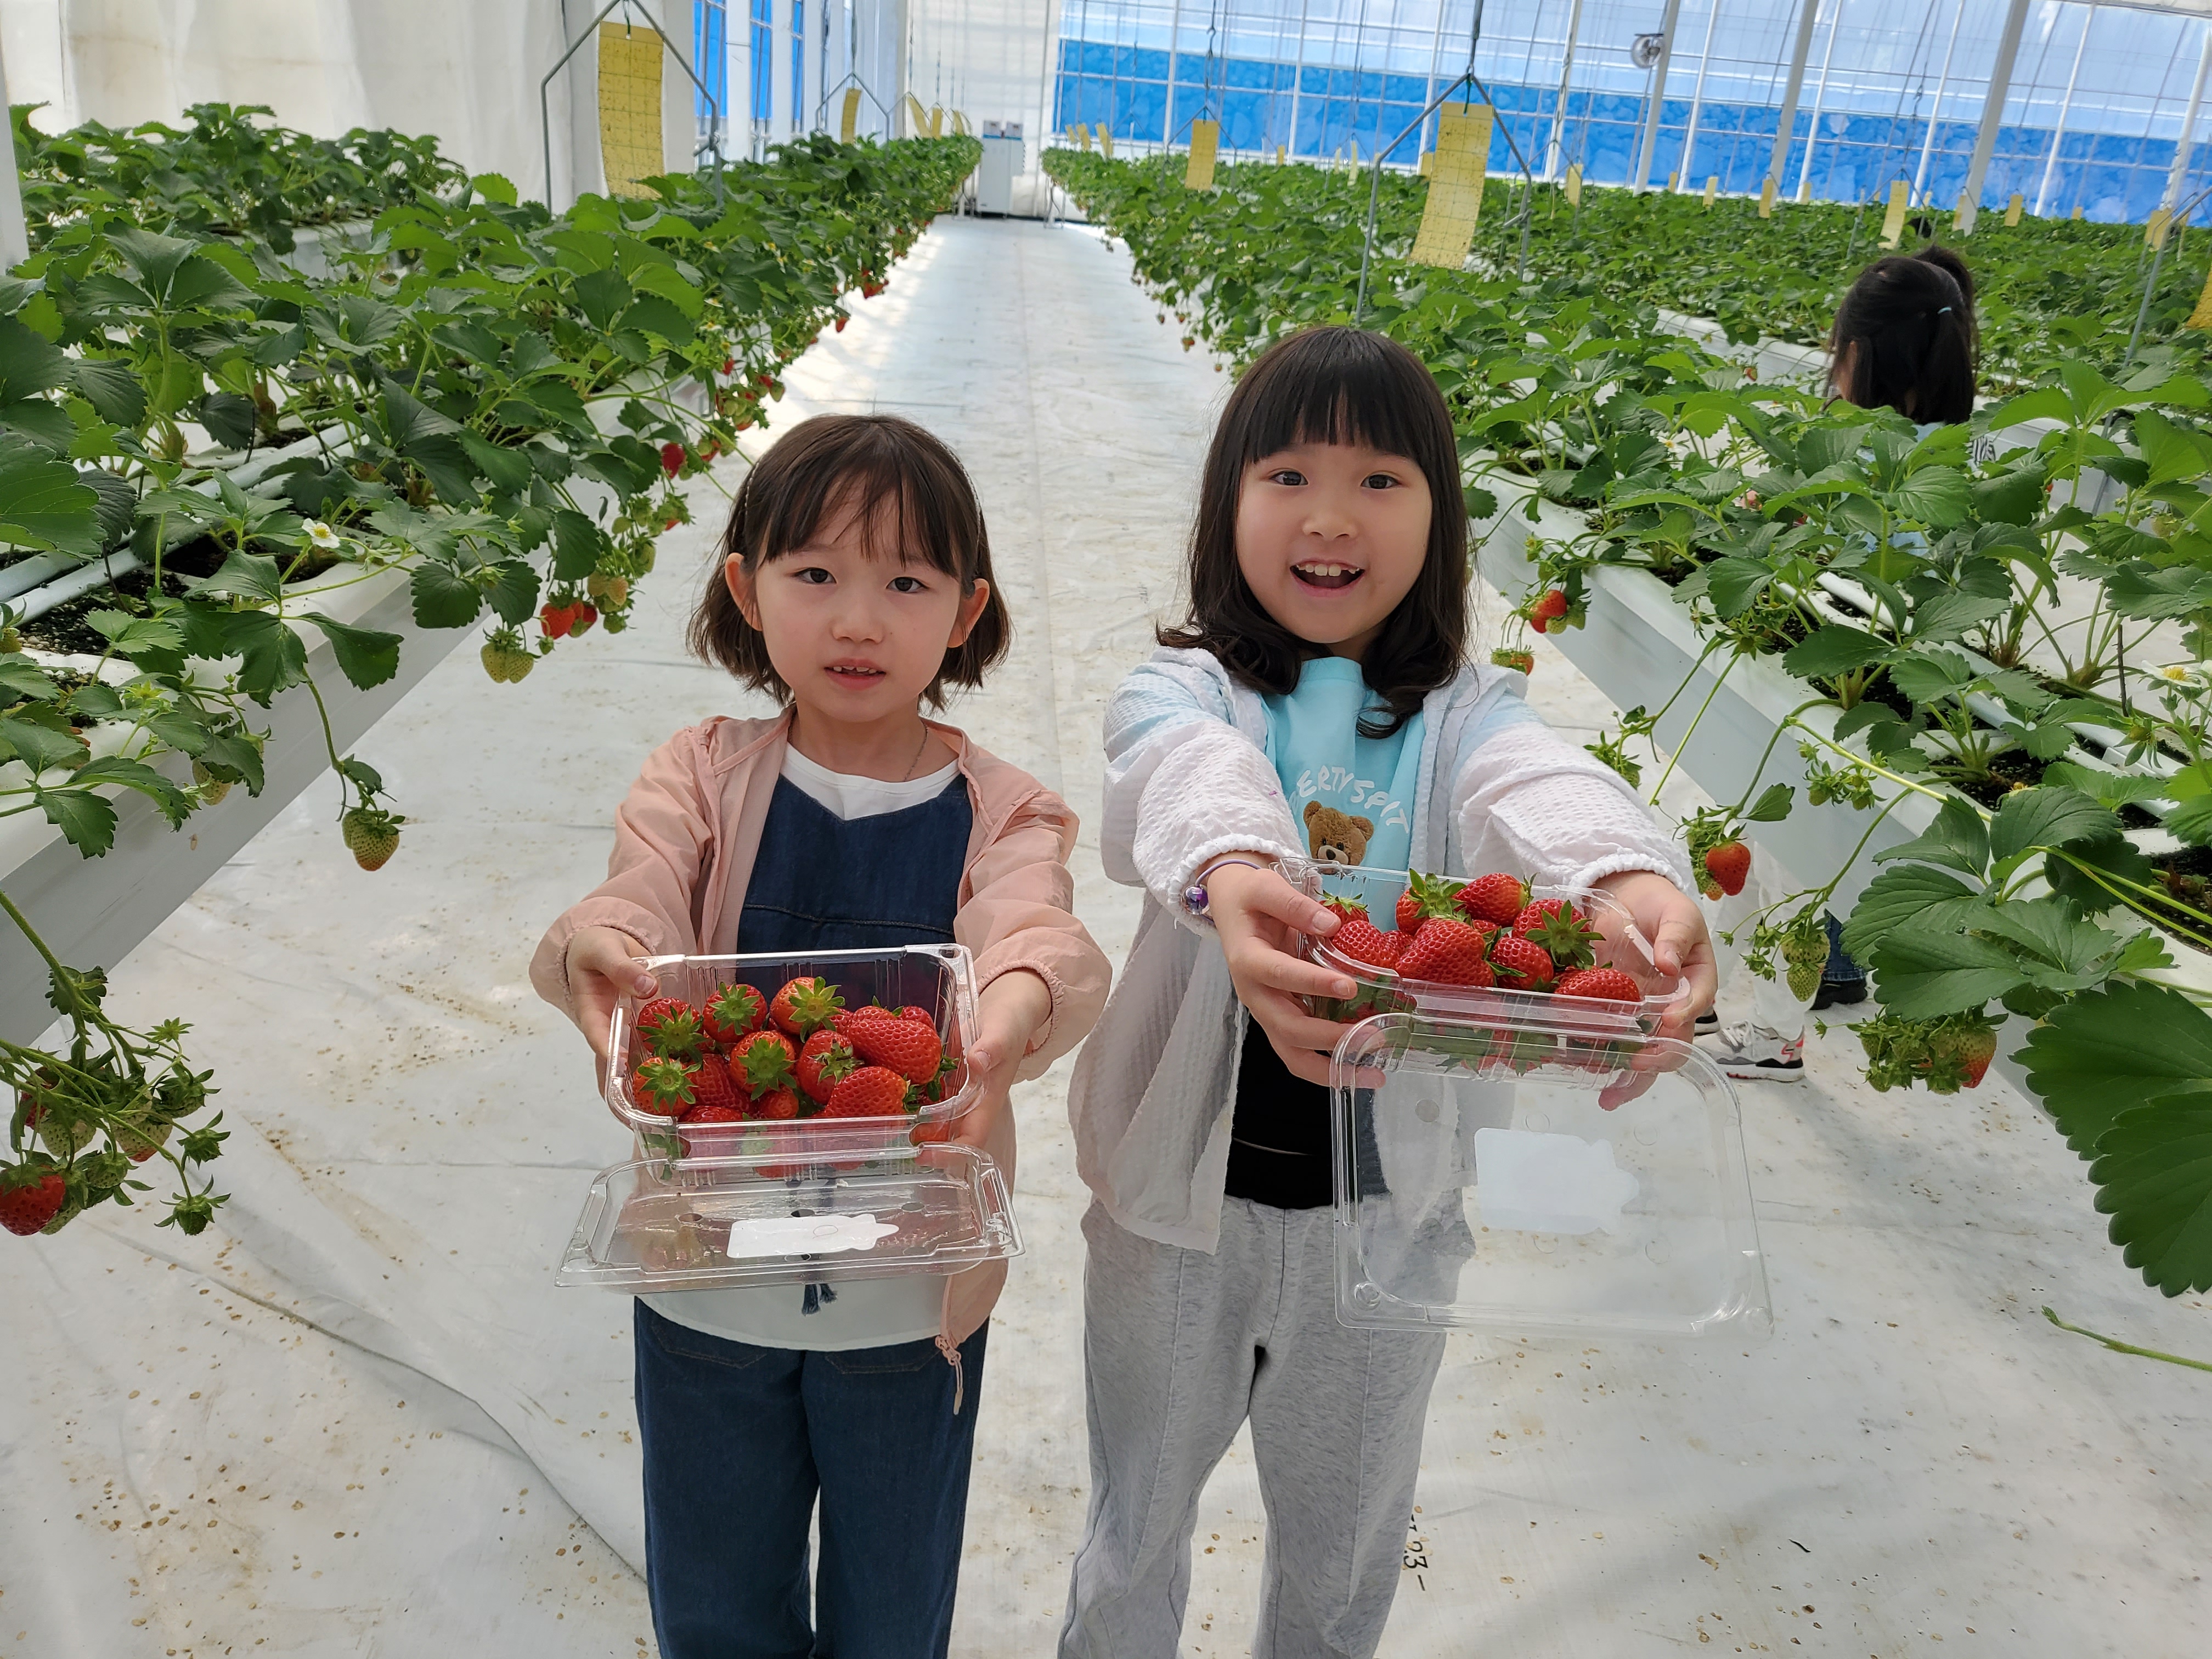 1~2학년 4월 25일 현장체험학습: 별딸기 농장, 딸기 따기 체험